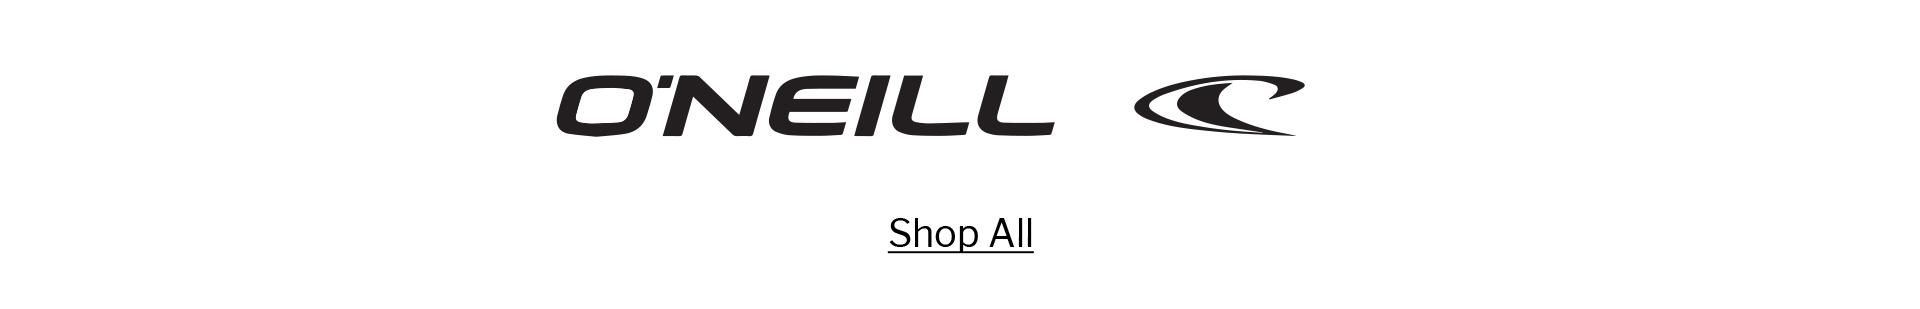 O'NEILL | SHOP ALL